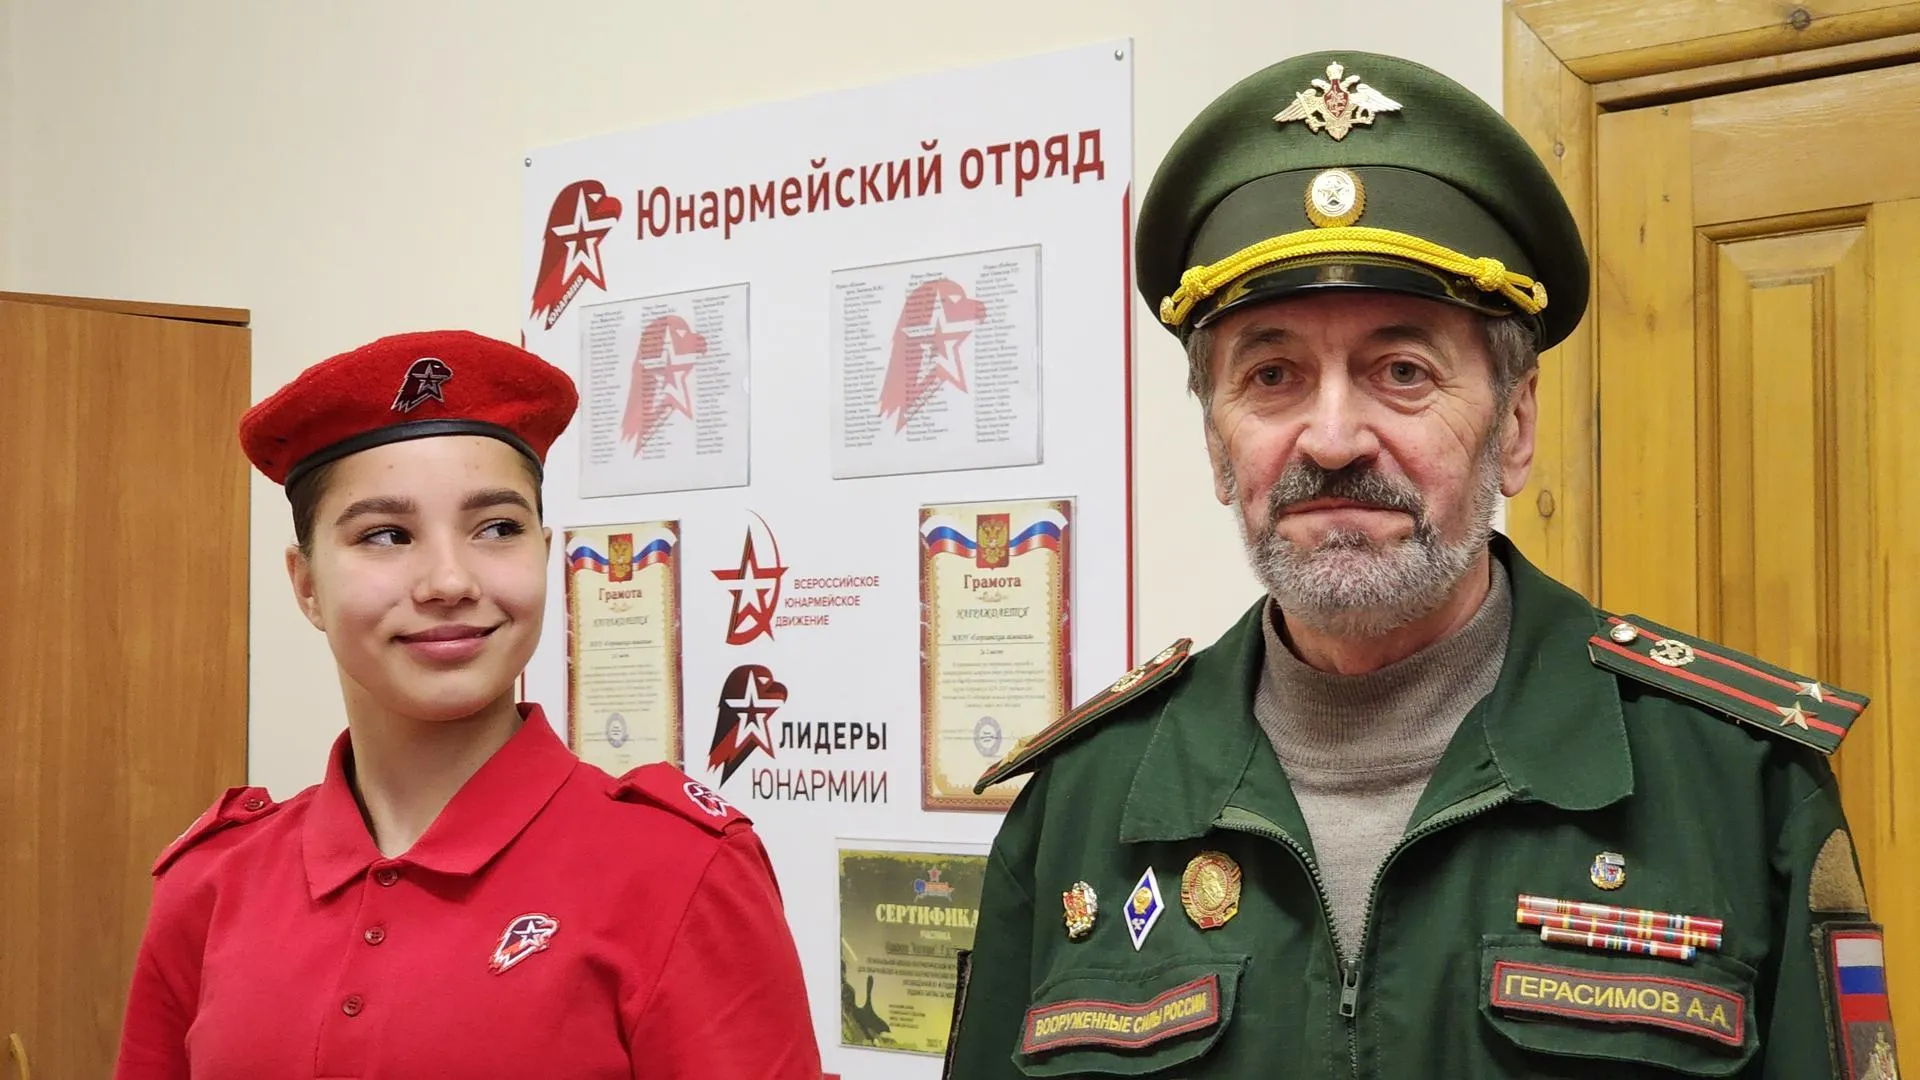 Школьница из Егорьевска стала «Красой Юнармии» Подмосковья